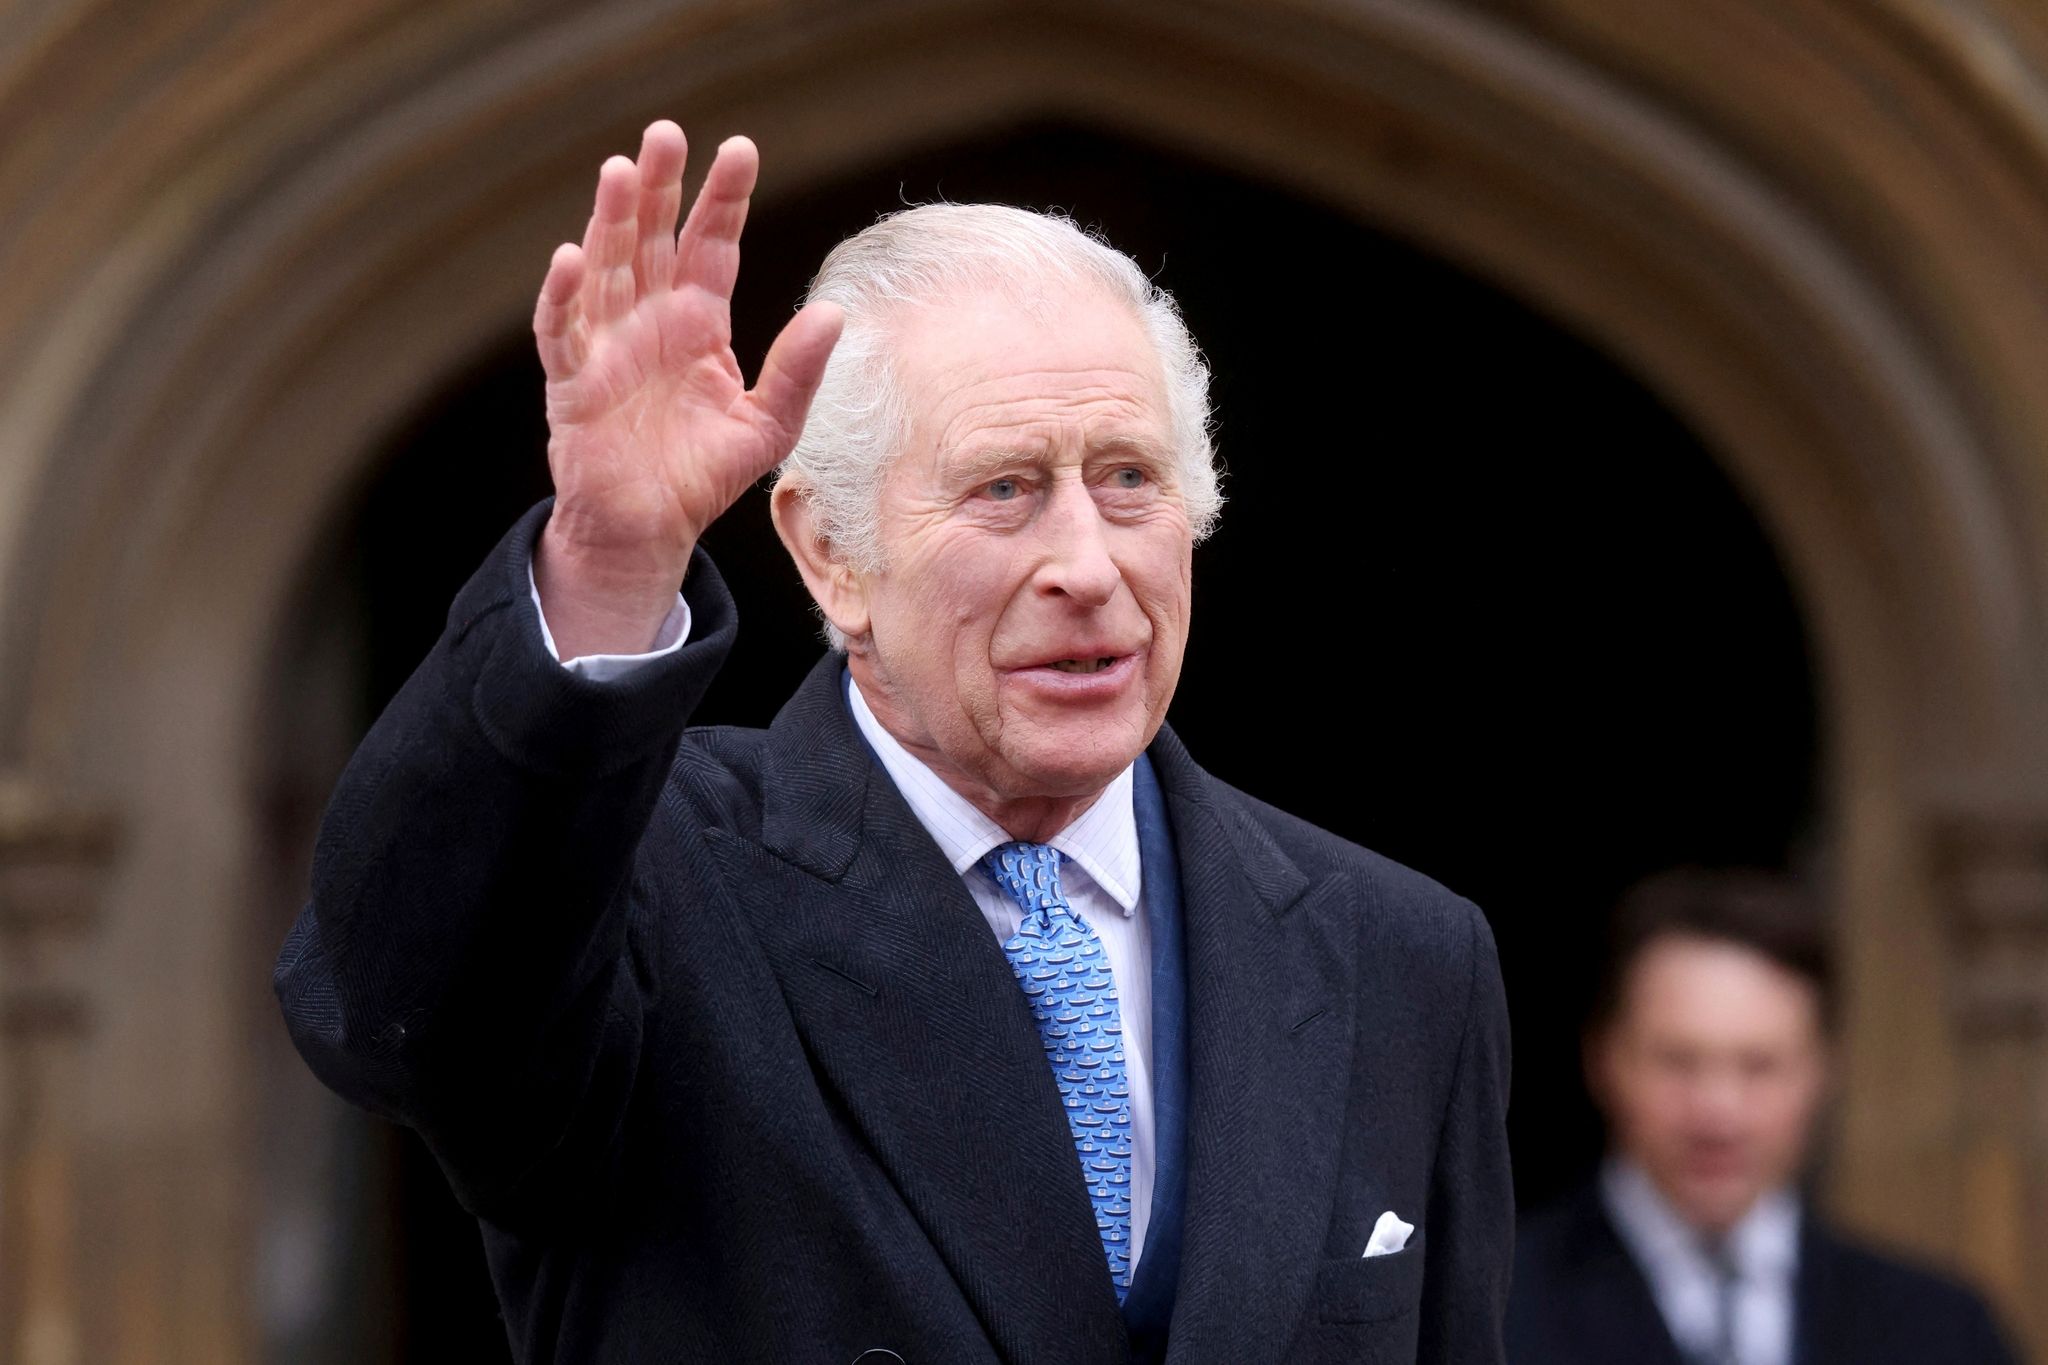 König Charles III. will wieder in die Öffentlichkeit zurückkehren.